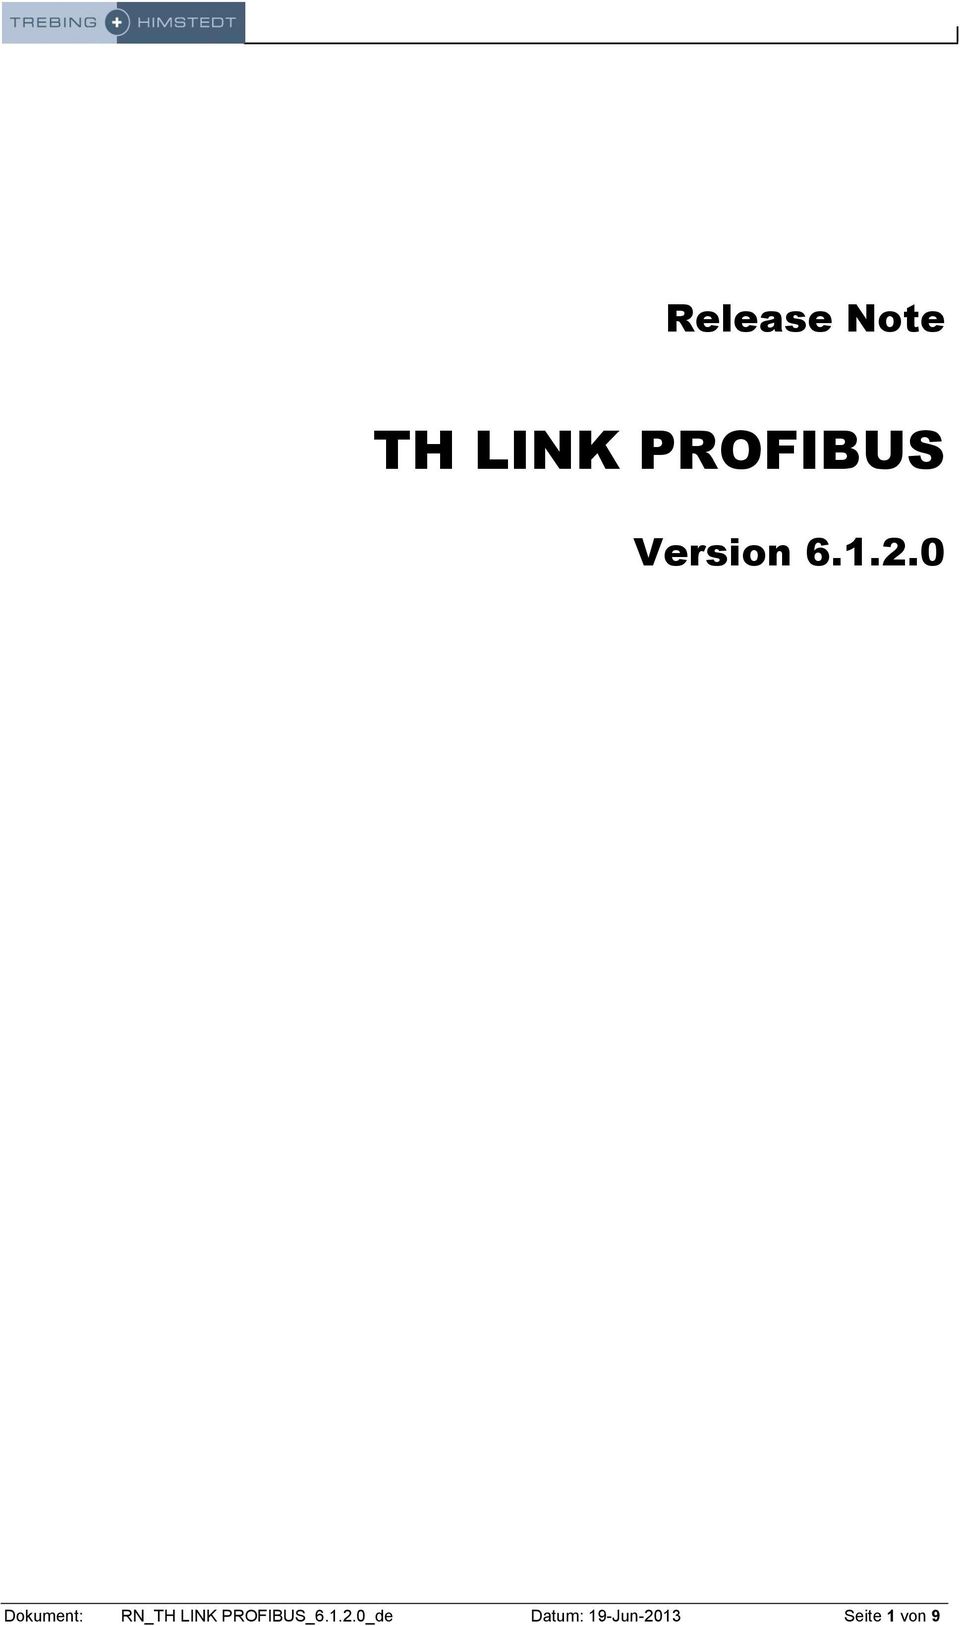 PROFIBUS_6.1.2.